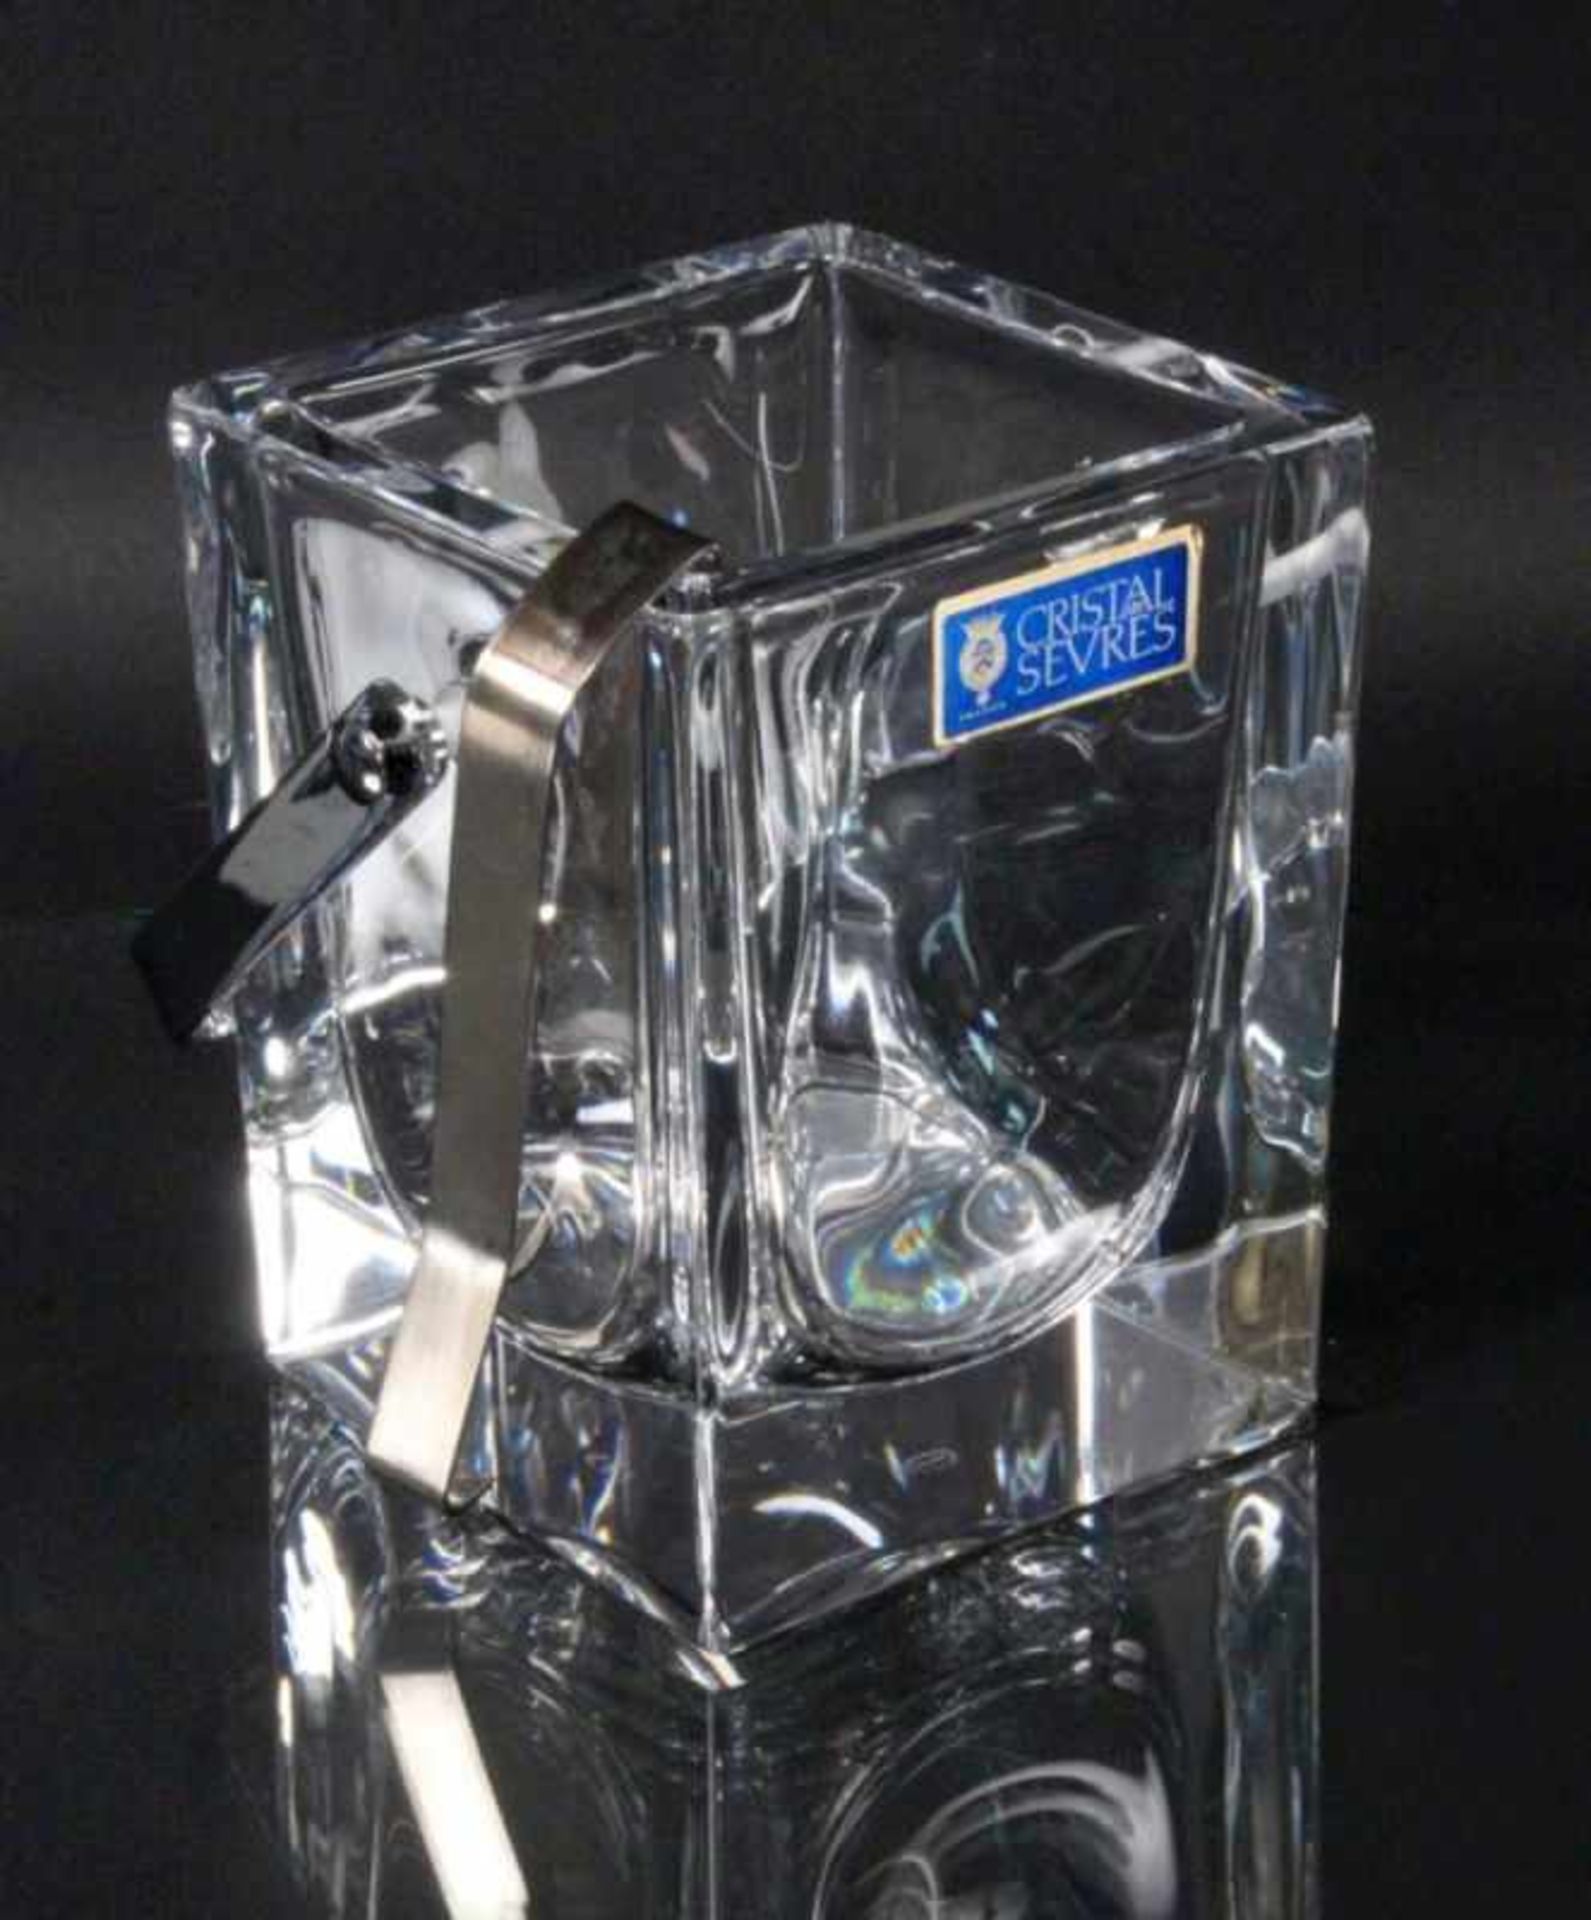 EISWÜRFELBEHÄLTER MIT ZANGE Cristal de Sèvres, France Dickwandiges farbloses Glas. Signiert und